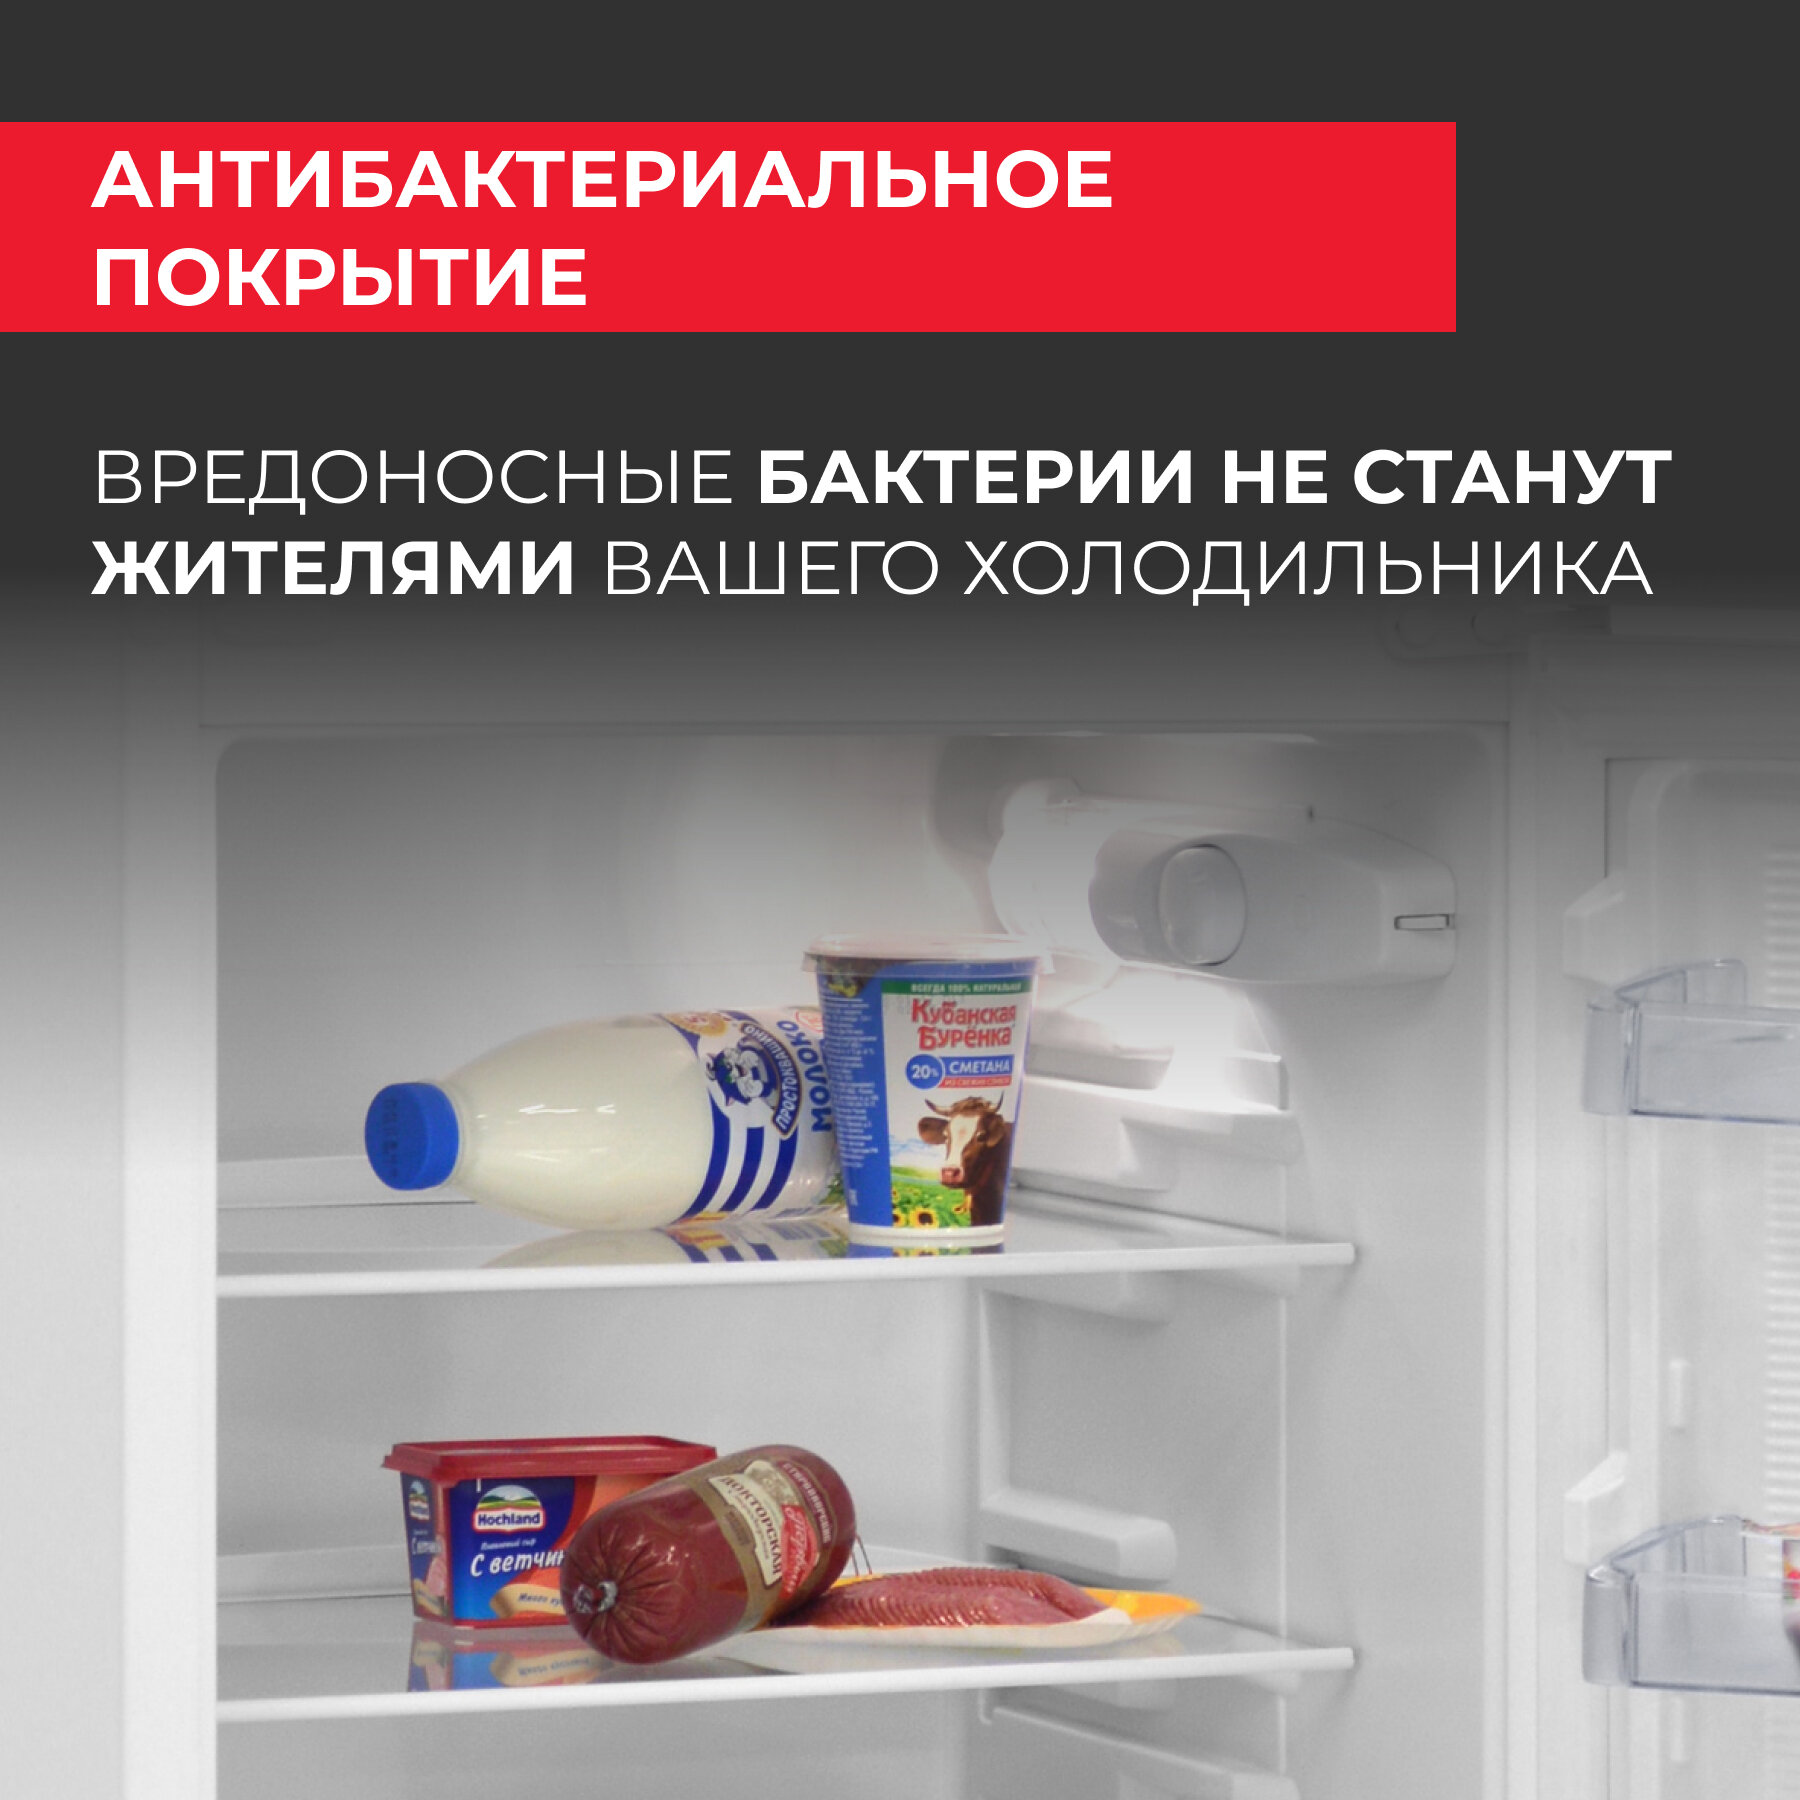 NEKO Холодильник NEKO ERT 243